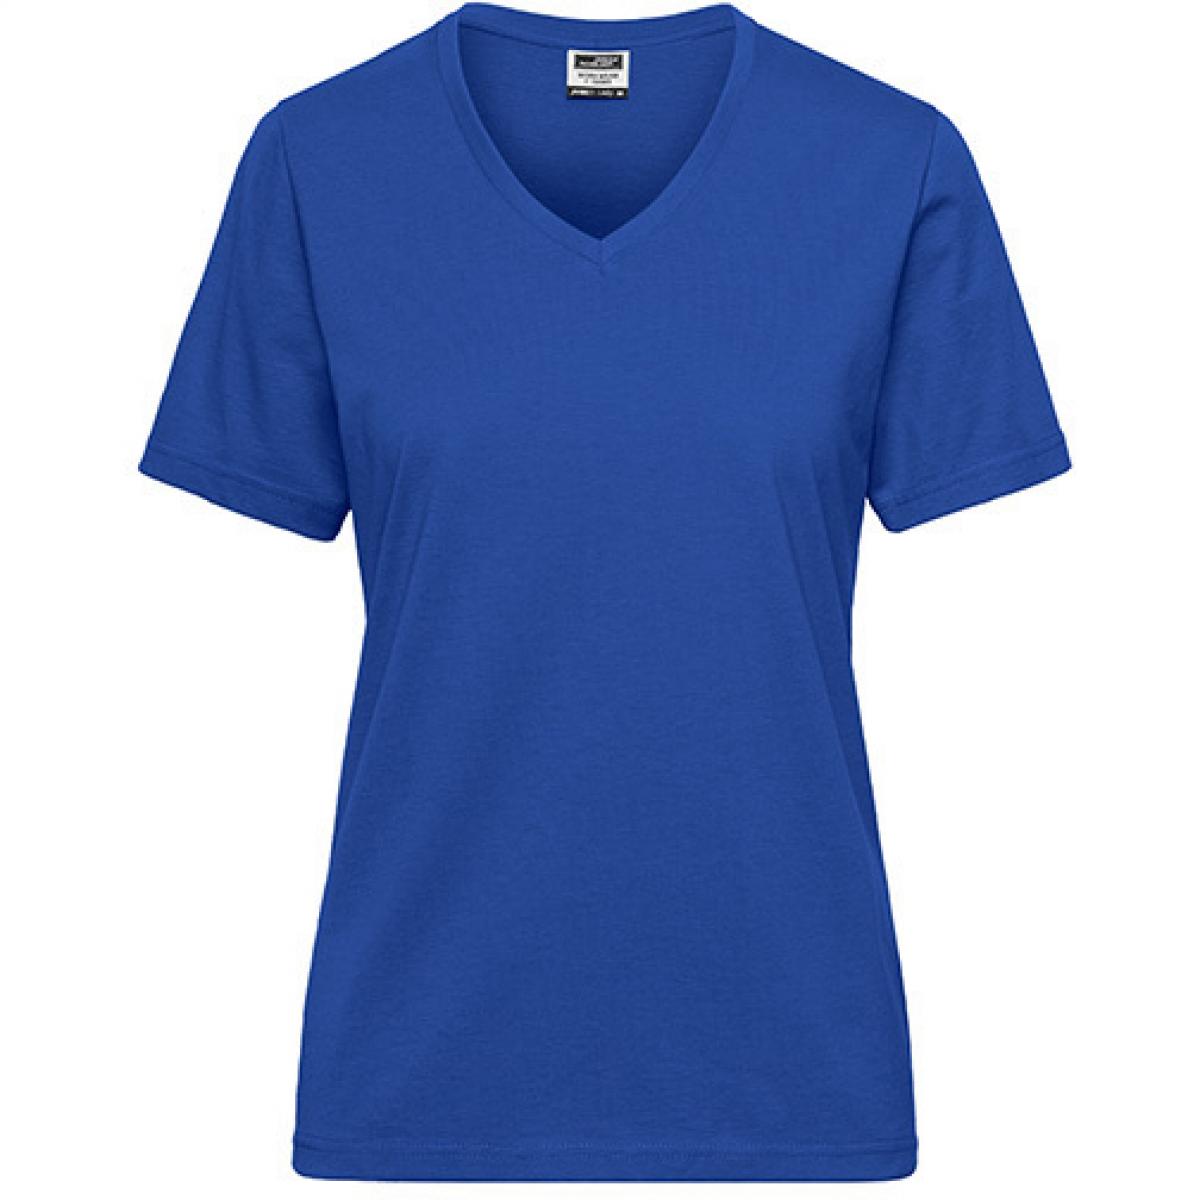 Hersteller: James+Nicholson Herstellernummer: JN1807 Artikelbezeichnung: Ladies‘ BIO Workwear T-Shirt / Damen T-Shirt - Waschbar 60C Farbe: Royal